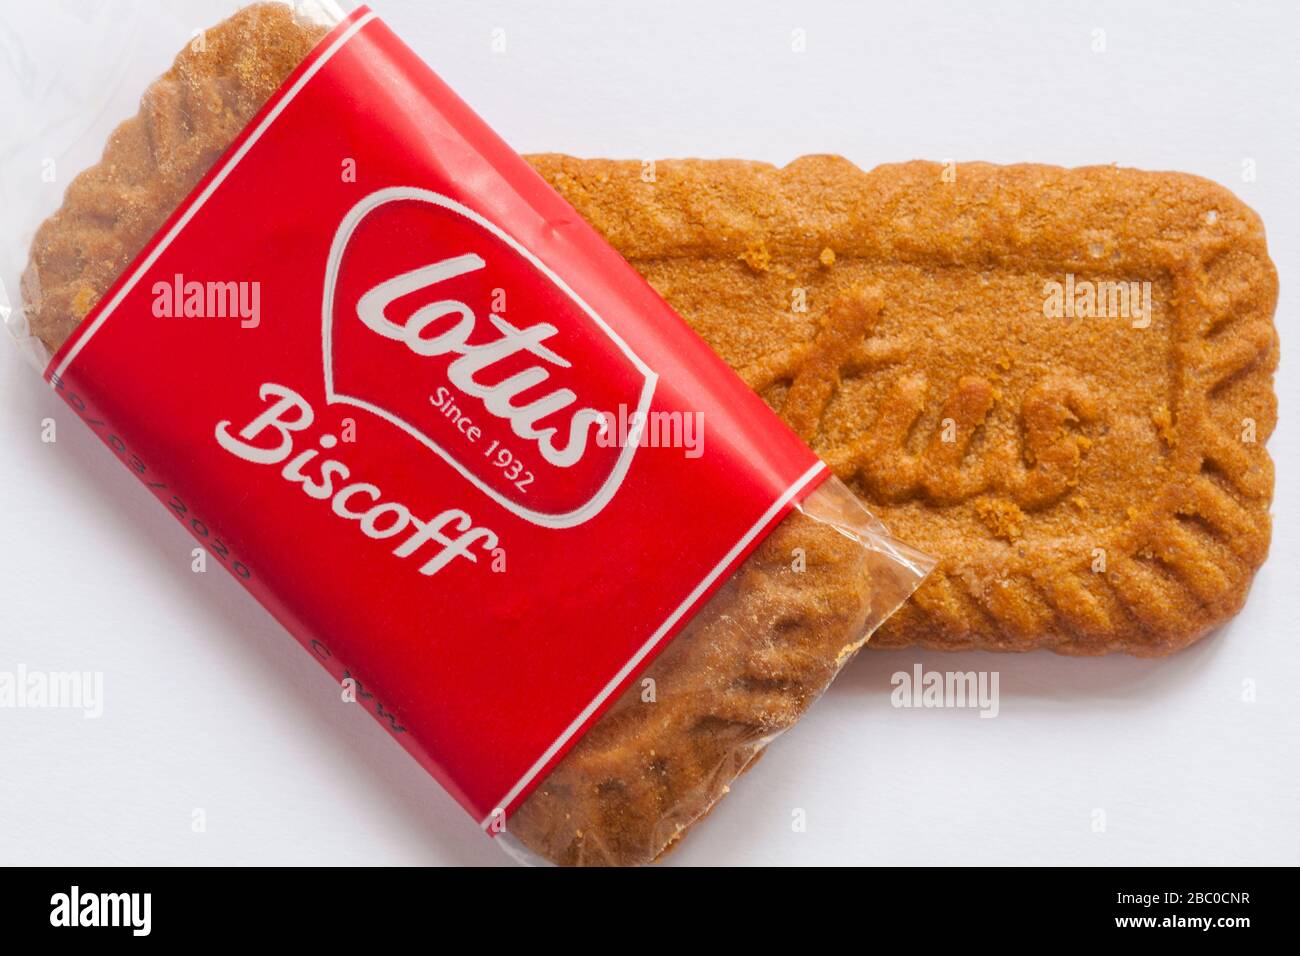 En-cas de biscuits Lotus Biscoff un dans l'emballage, un set non emballé sur fond blanc Banque D'Images